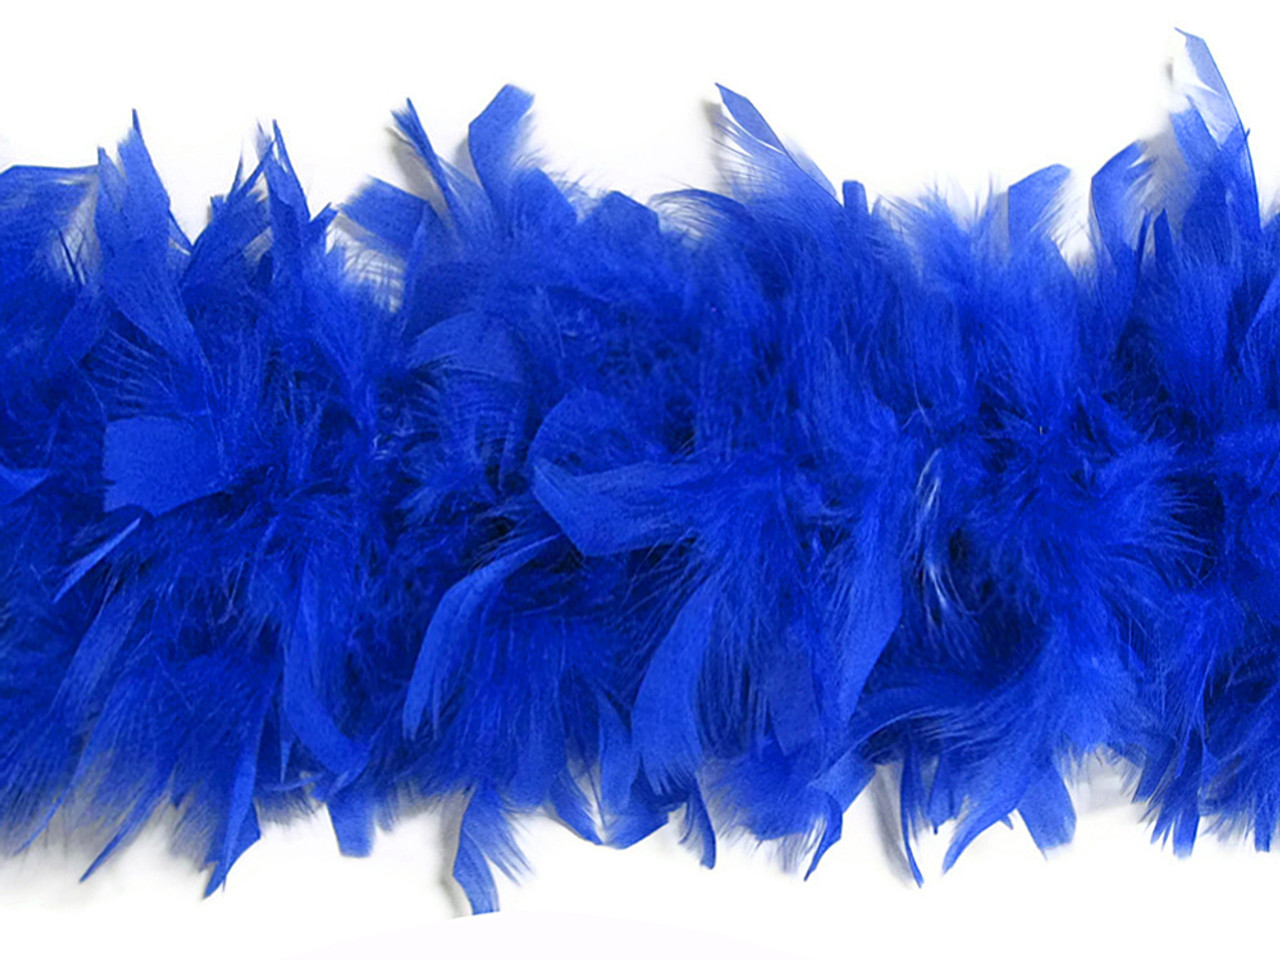 Mardigras Mix Turkey Feather Boas in Multi Colors | Buy Fluffy Boa